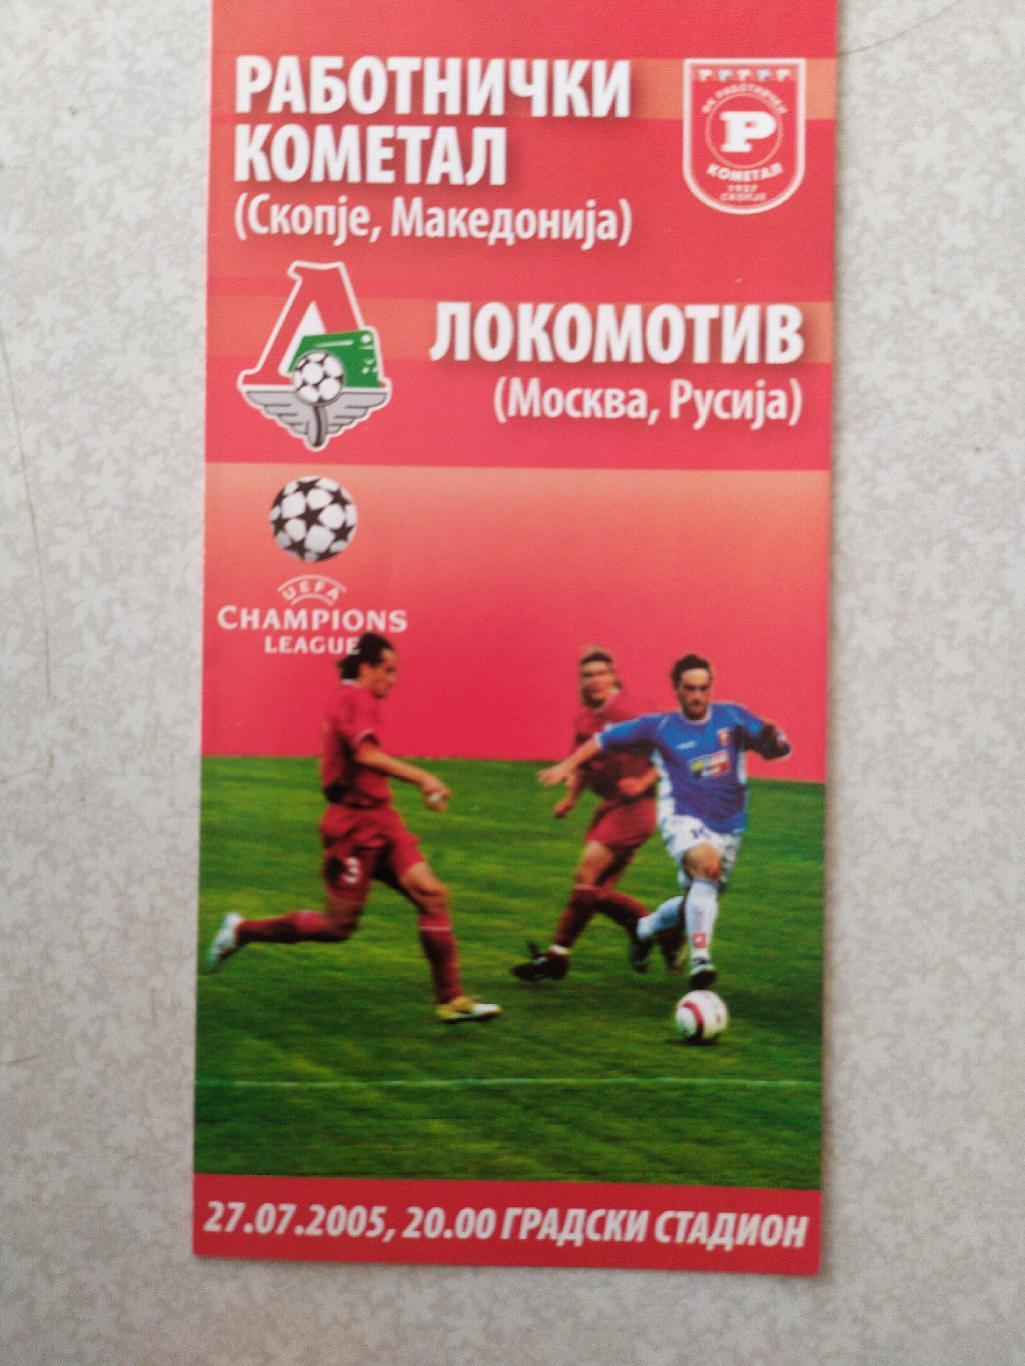 Работнички-Локомотив Москва 27.07.2005 Лига чемпионов